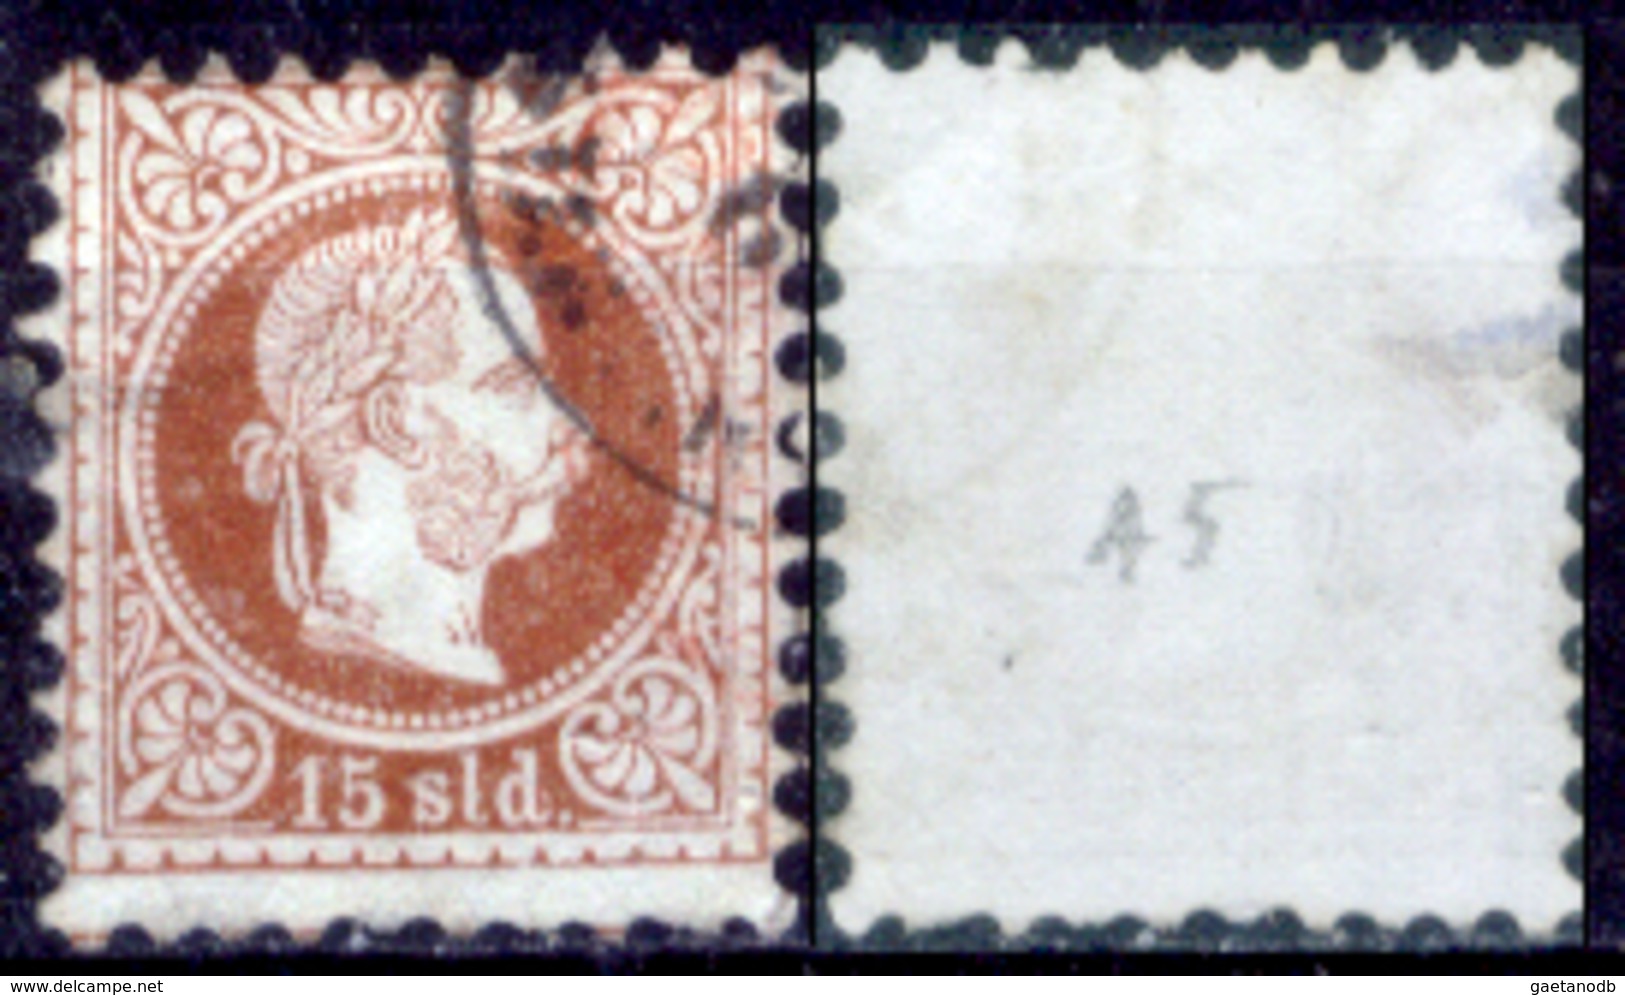 Levante-Austriaco-22 - 1867 - Yvert & Tellier N. A5 (o) /Used - Privo Di Difetti Occulti. - Oostenrijkse Levant